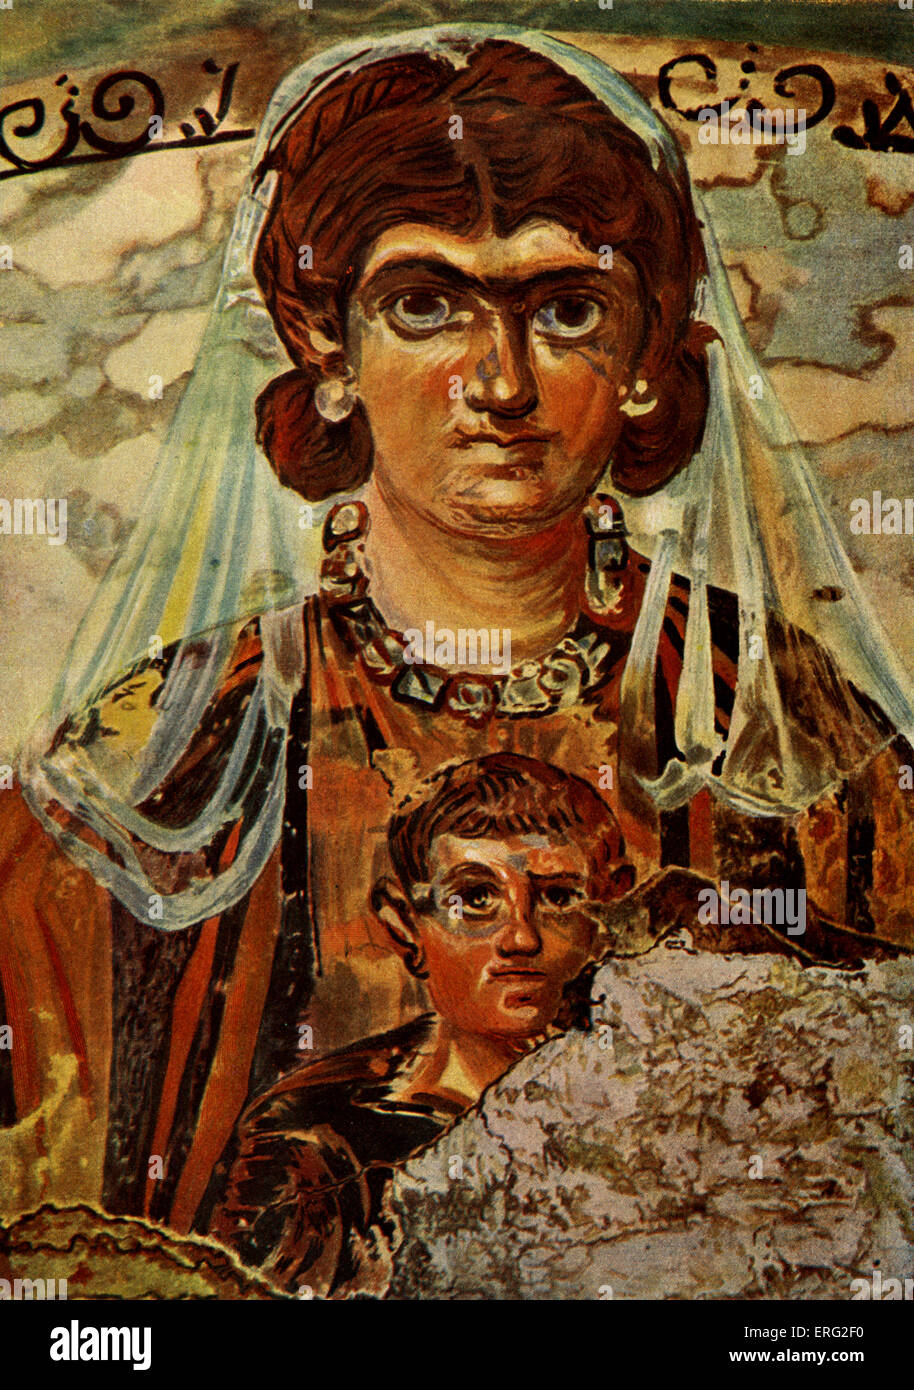 La Madonna e il bambino. Affresco in un romano sepoltura, Roma, Italia. Quarto secolo. Foto Stock